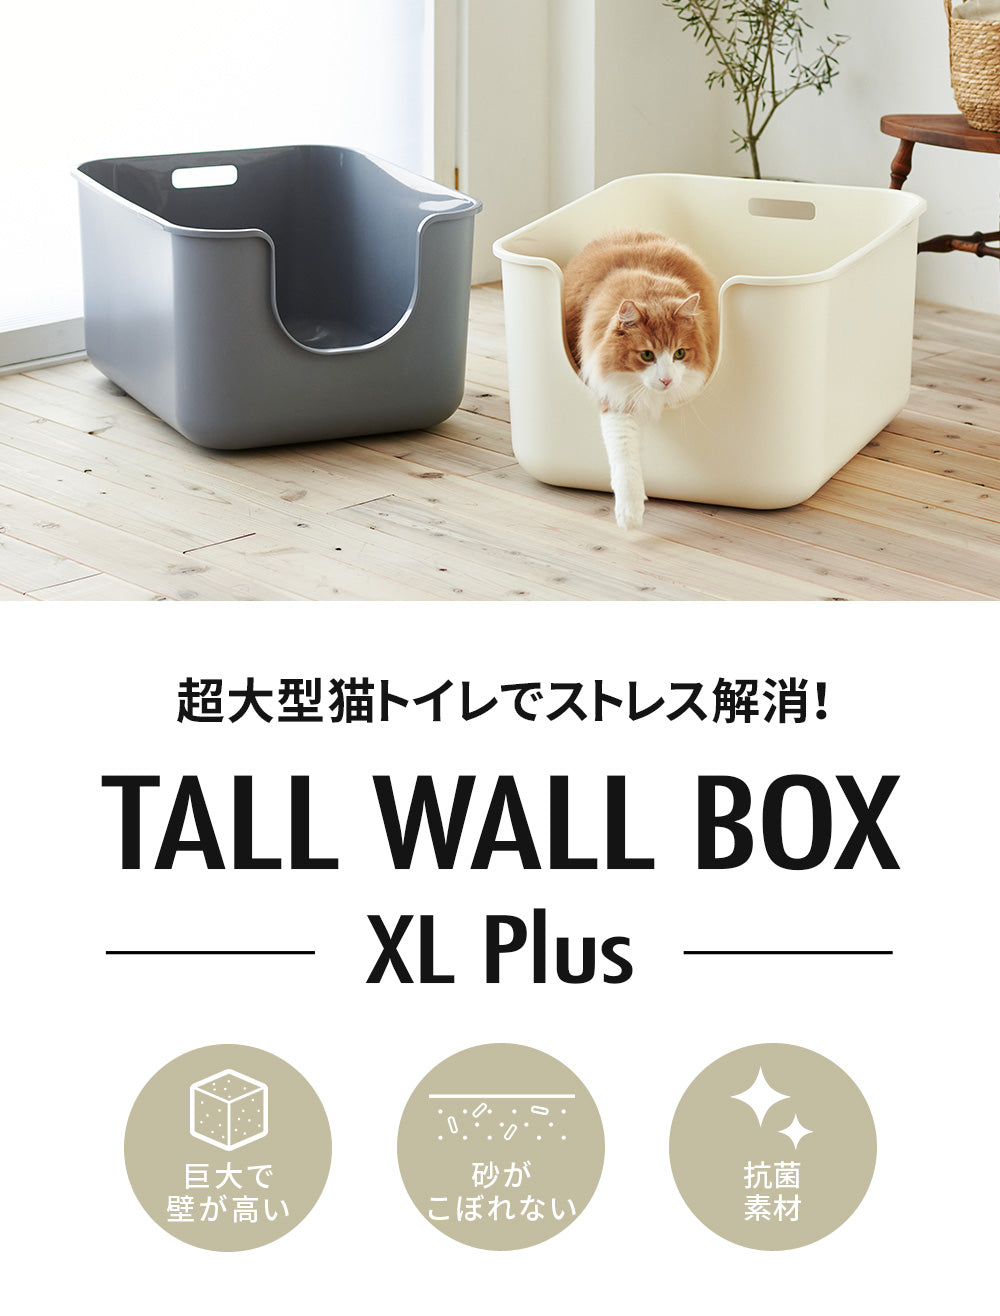 超大型猫トイレ 【TALL WALL BOX - XL Plus】スプレー対策や砂の飛び散り防止に